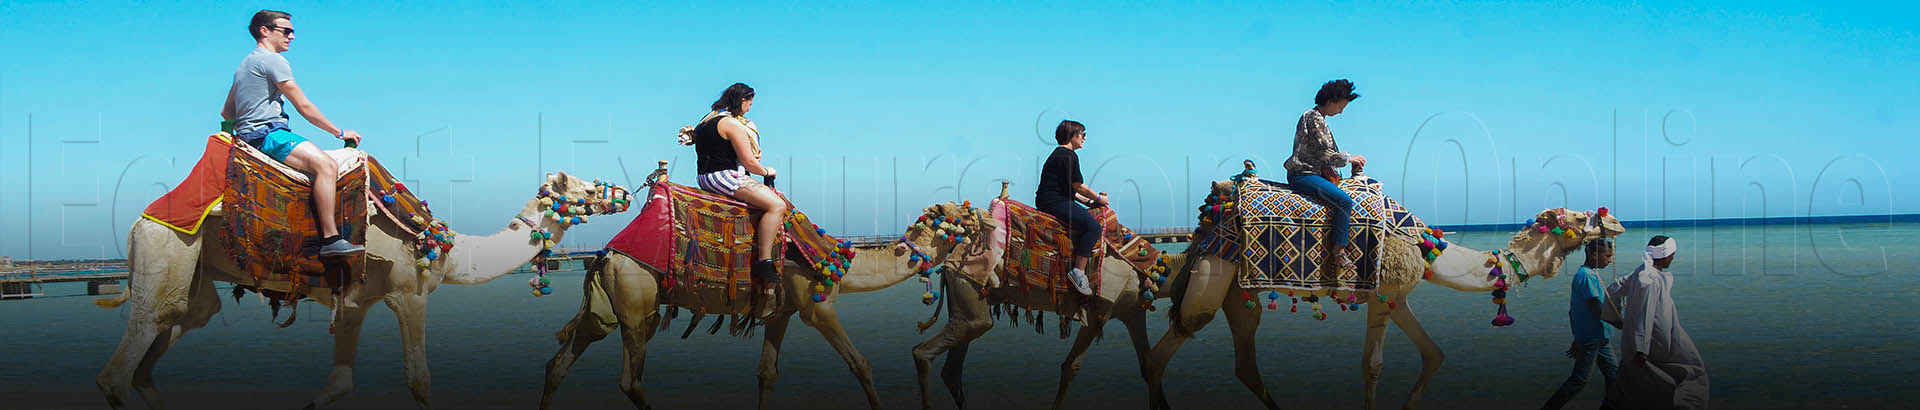 El Gouna Camel Ride Tour